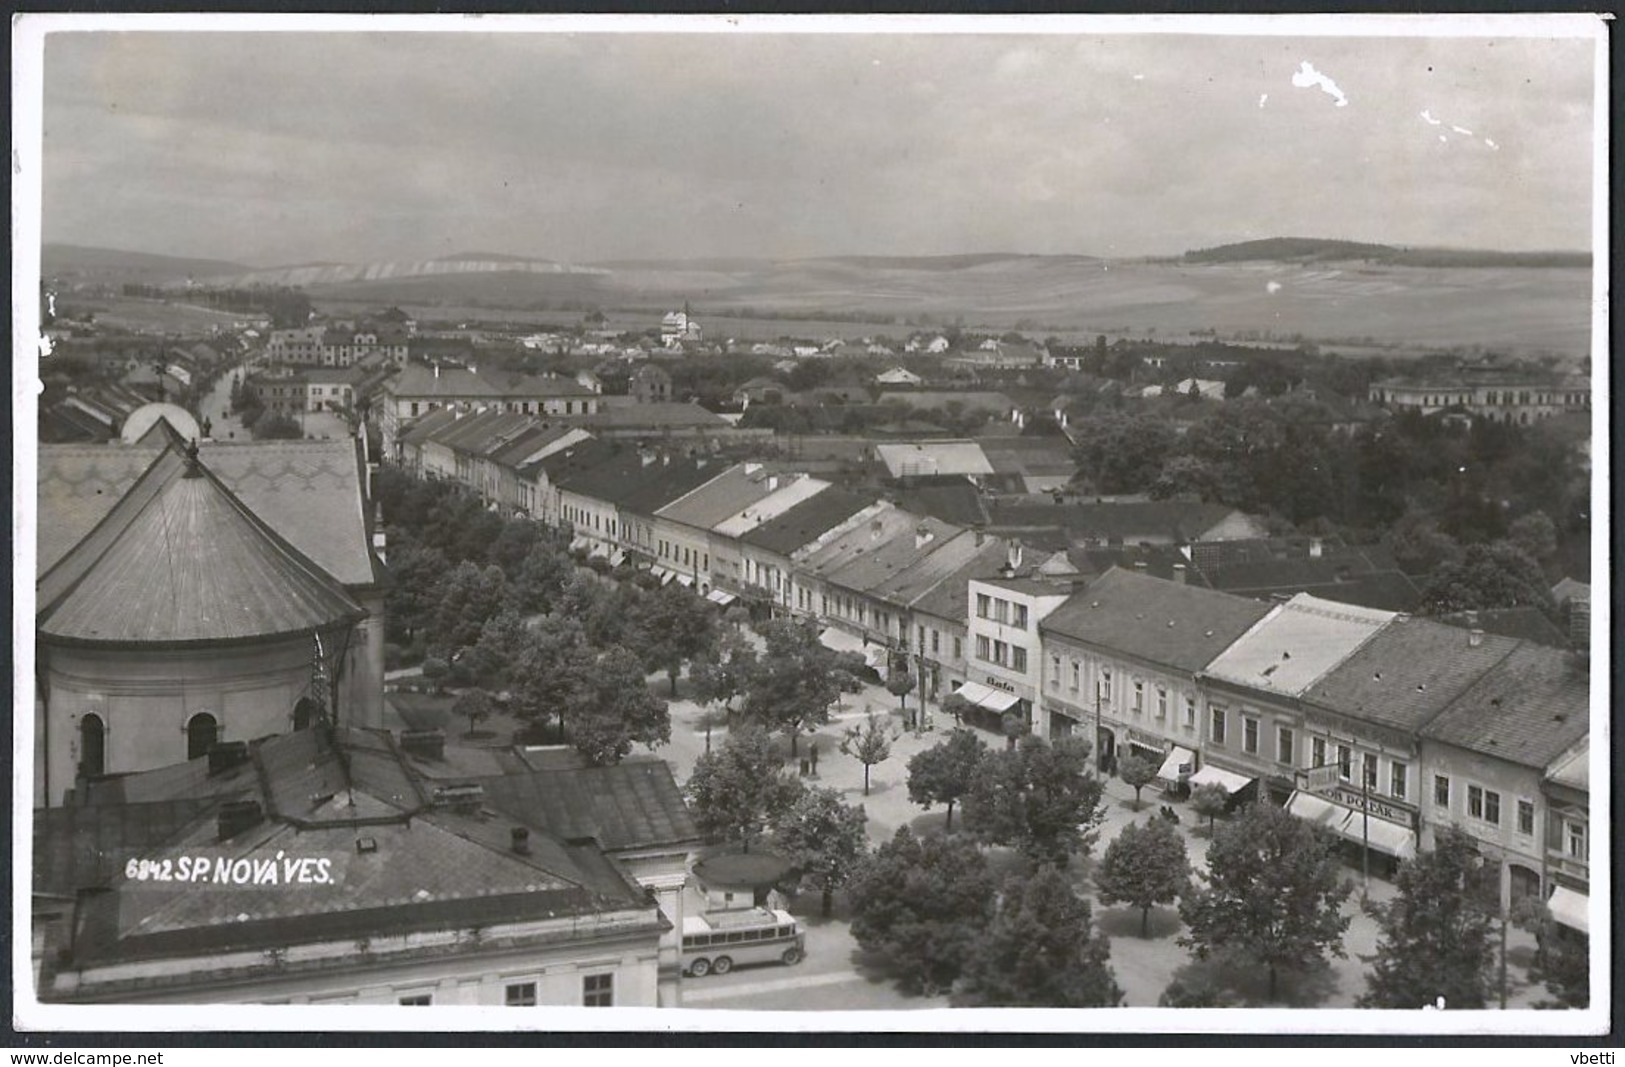 Slovakia / Hungary: Spišská Nová Ves (Igló / Zipser Neudorf), Lot of 7 postcards